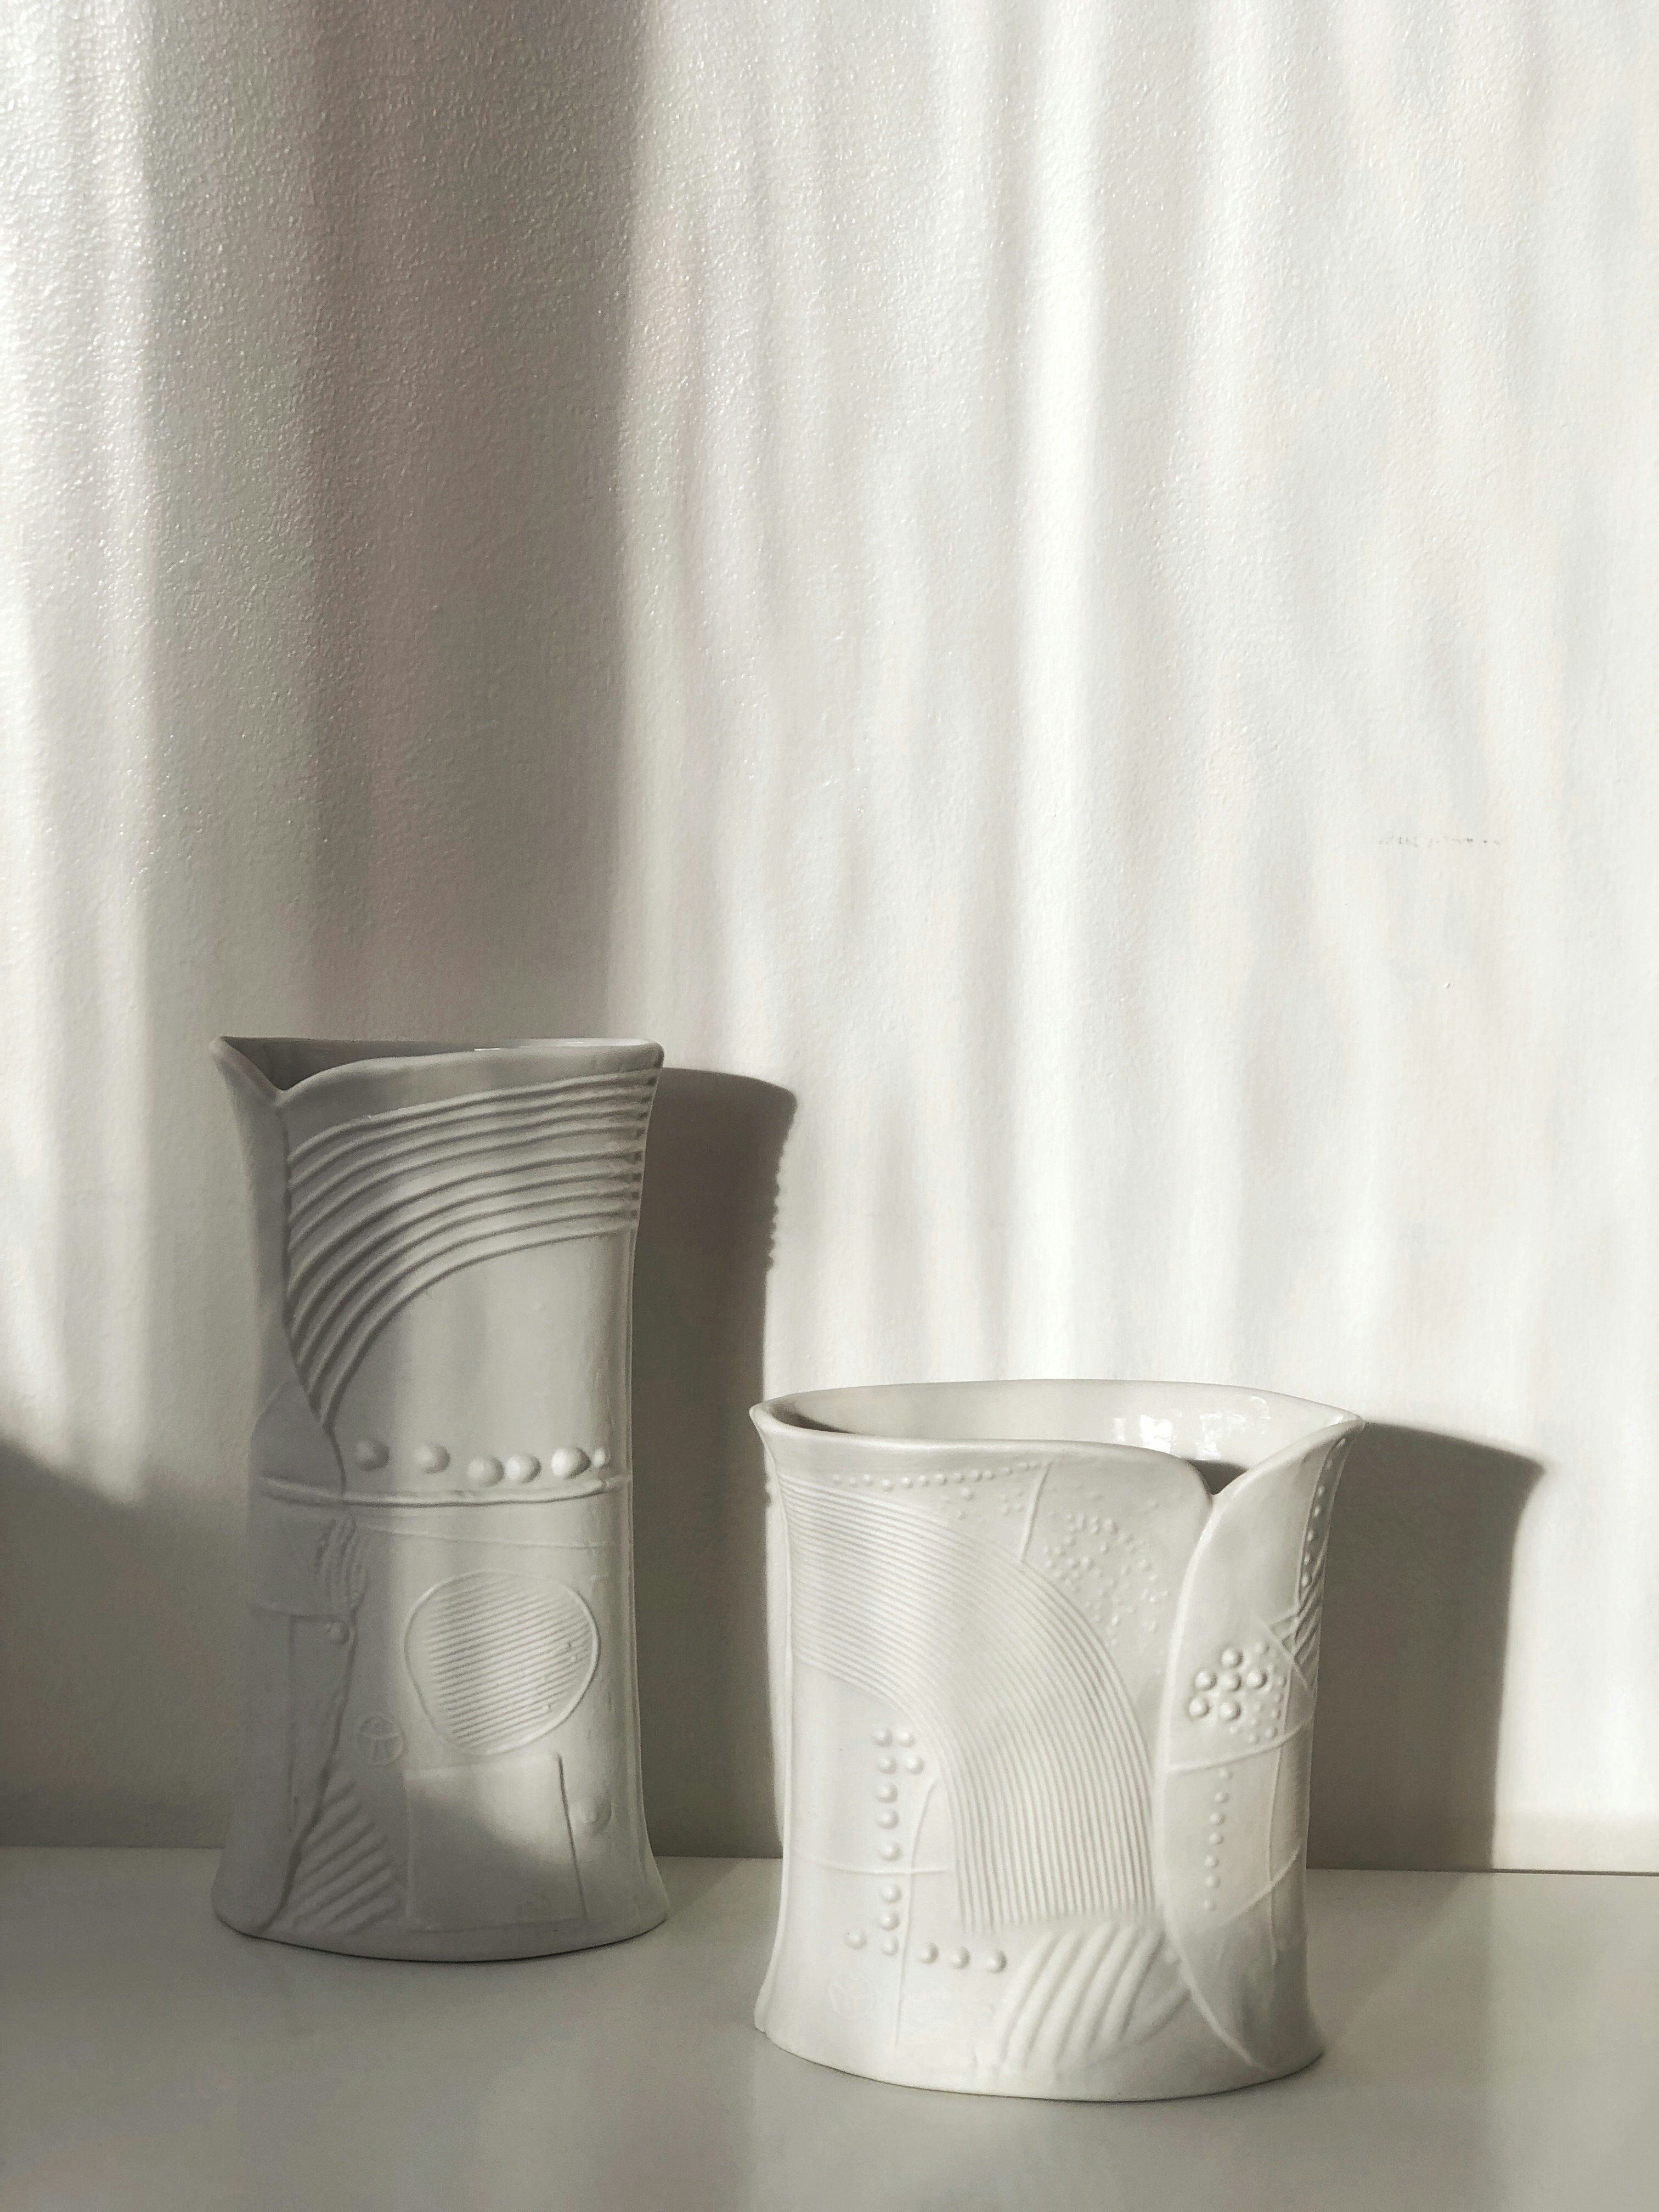 Bertil Vallién vases "Tierra" - set of two